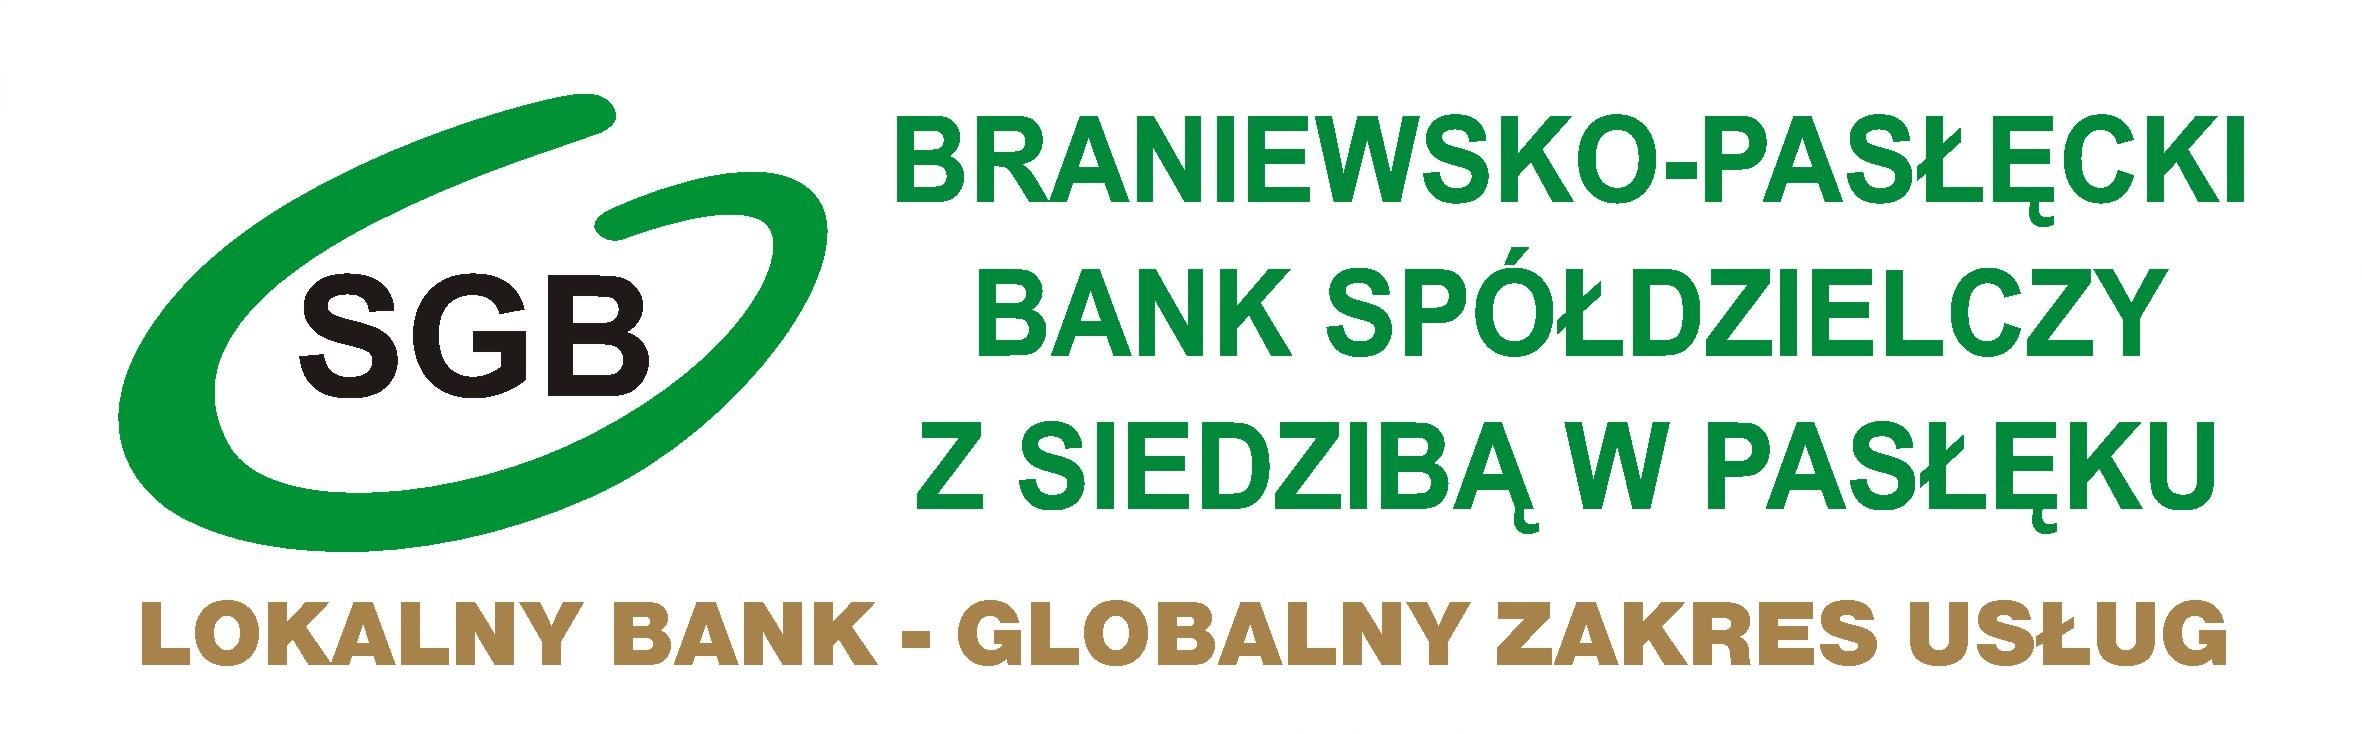 Kredyt płynnościowy 2% z dopłatą ARiMR - Braniewsko-Pasłęcki Bank Spółdzielczy z siedzibą w Pasłęku